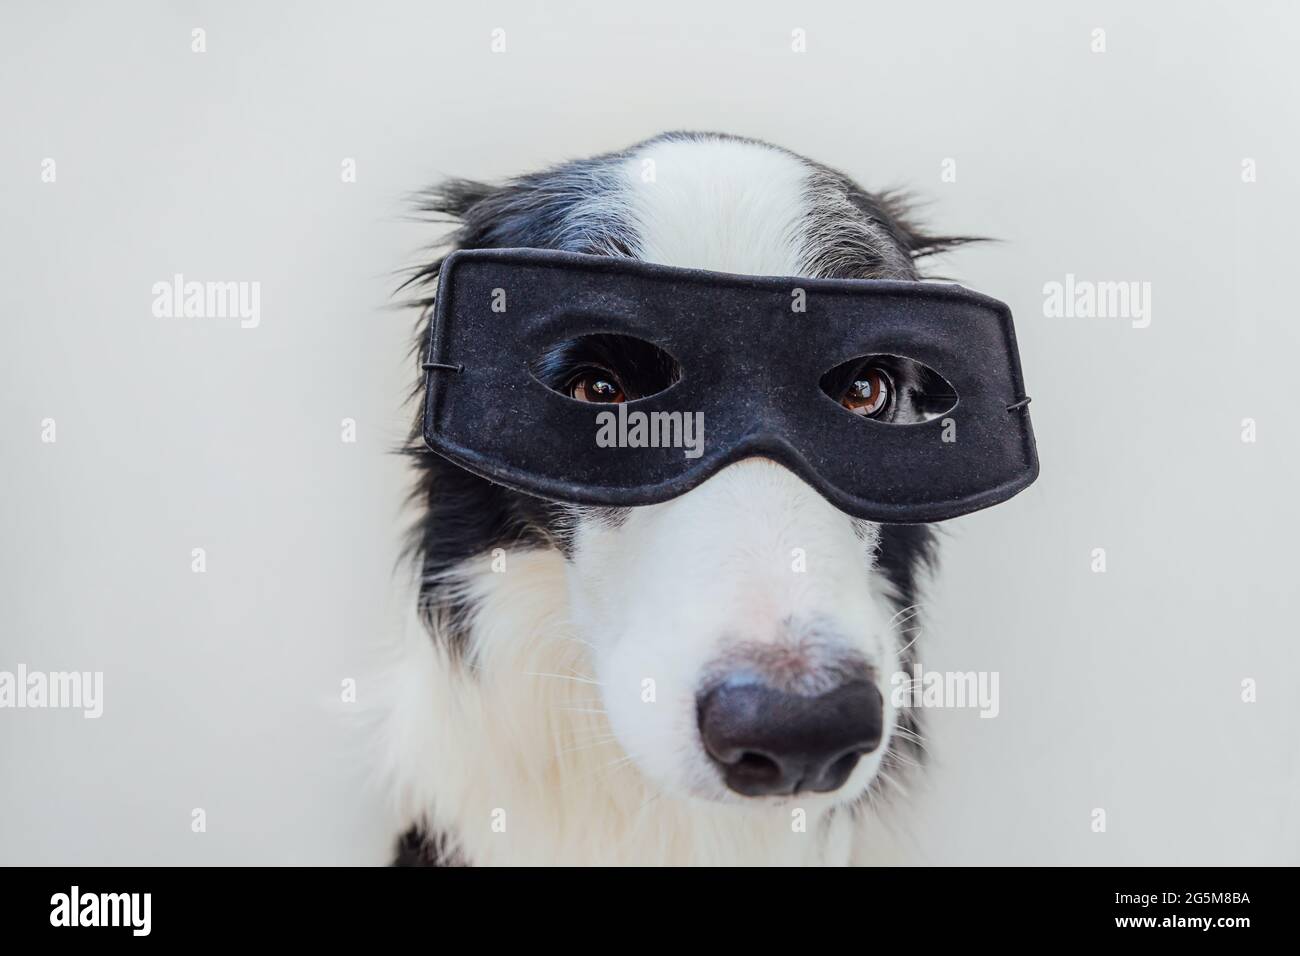 Lustige Porträt von niedlichen Hund Grenze Collie im Superhelden Kostüm isoliert auf weißem Hintergrund. Welpe trägt schwarze Superhelden Maske an Karneval oder Stockfoto